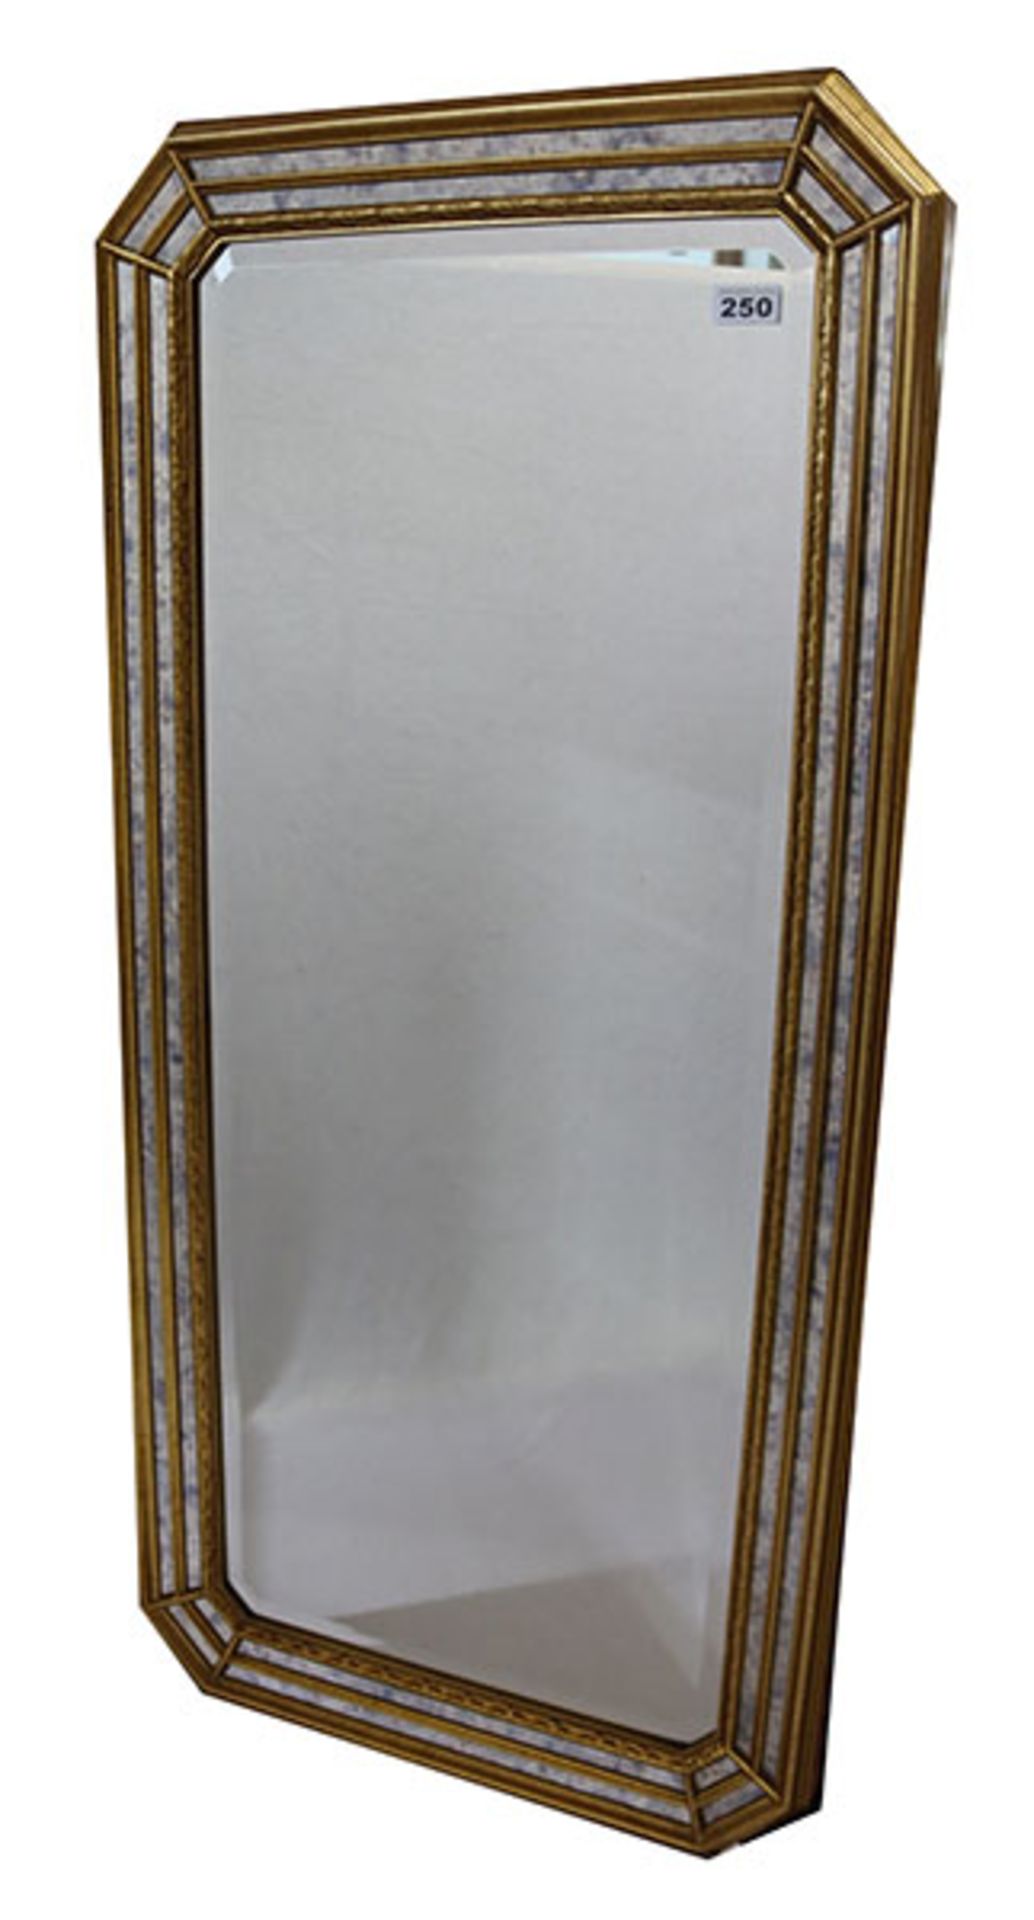 Wandspiegel in verspiegeltem Goldrahmen, Rahmen teils verkratzt, 116 cm x 53 cm